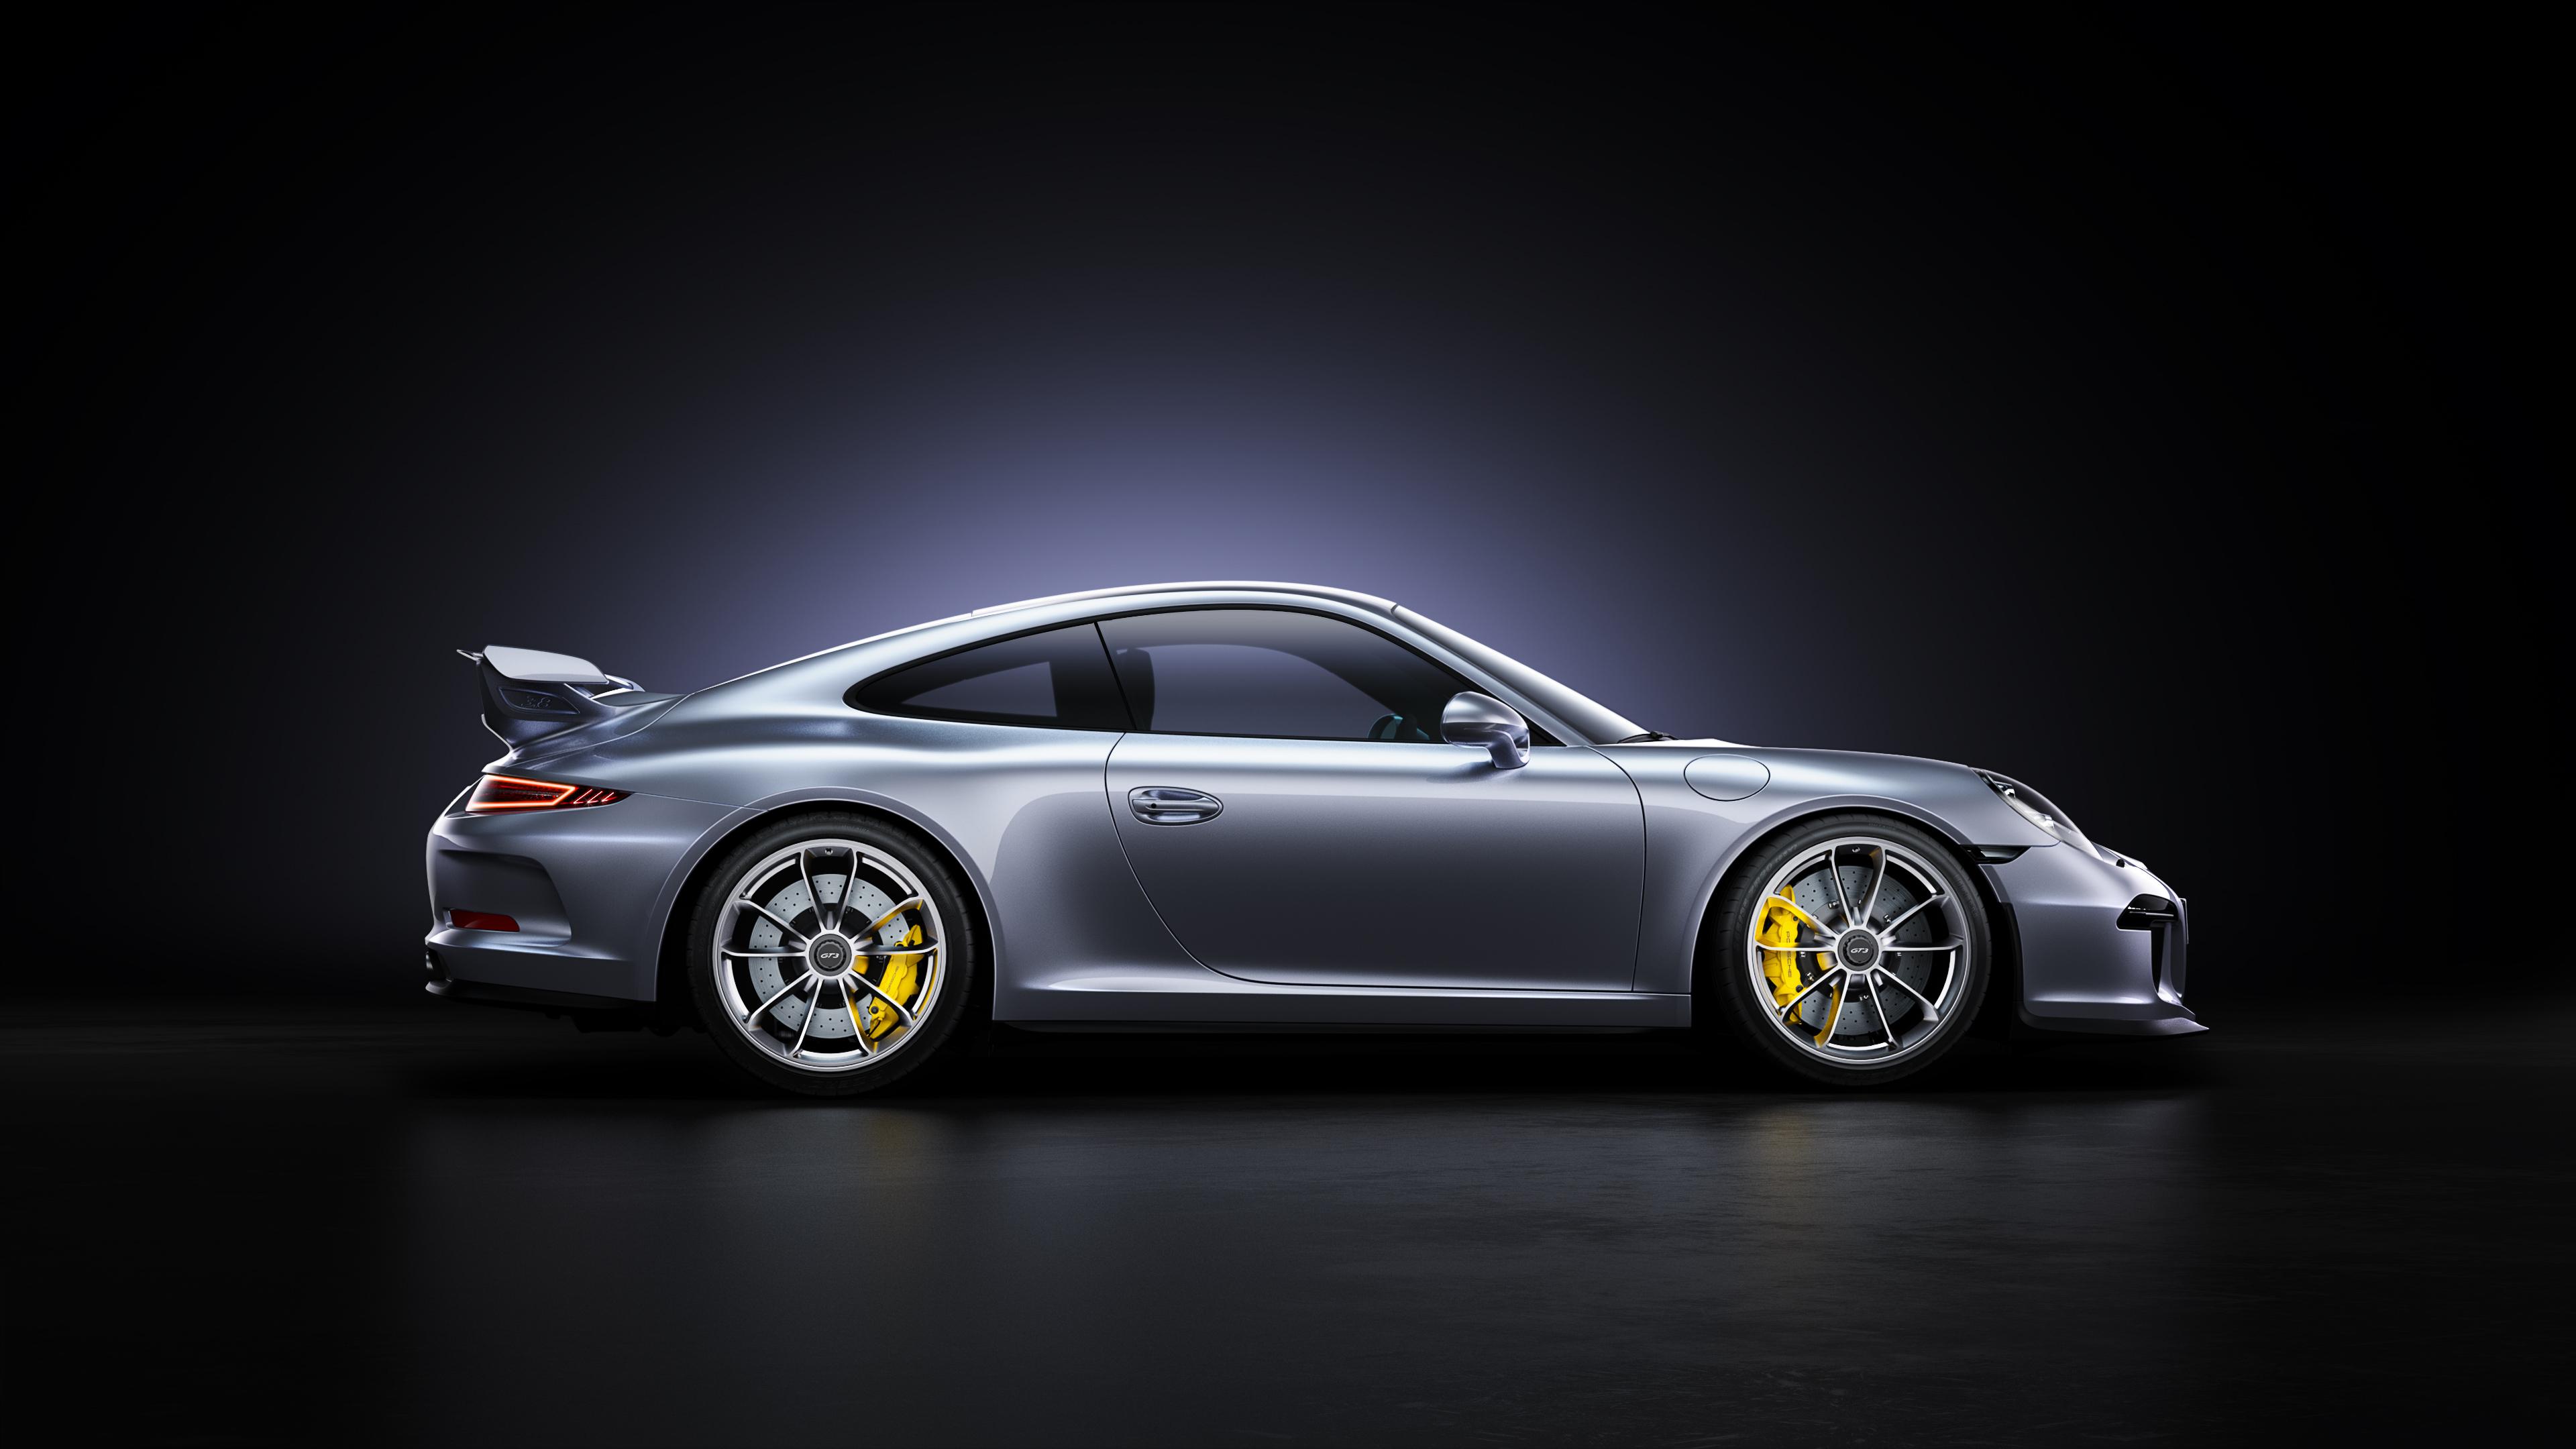 3840 x 2160 · jpeg - Porsche 911 GT3 4k, HD Cars, 4k Wallpapers, Images, Backgrounds, Photos ...